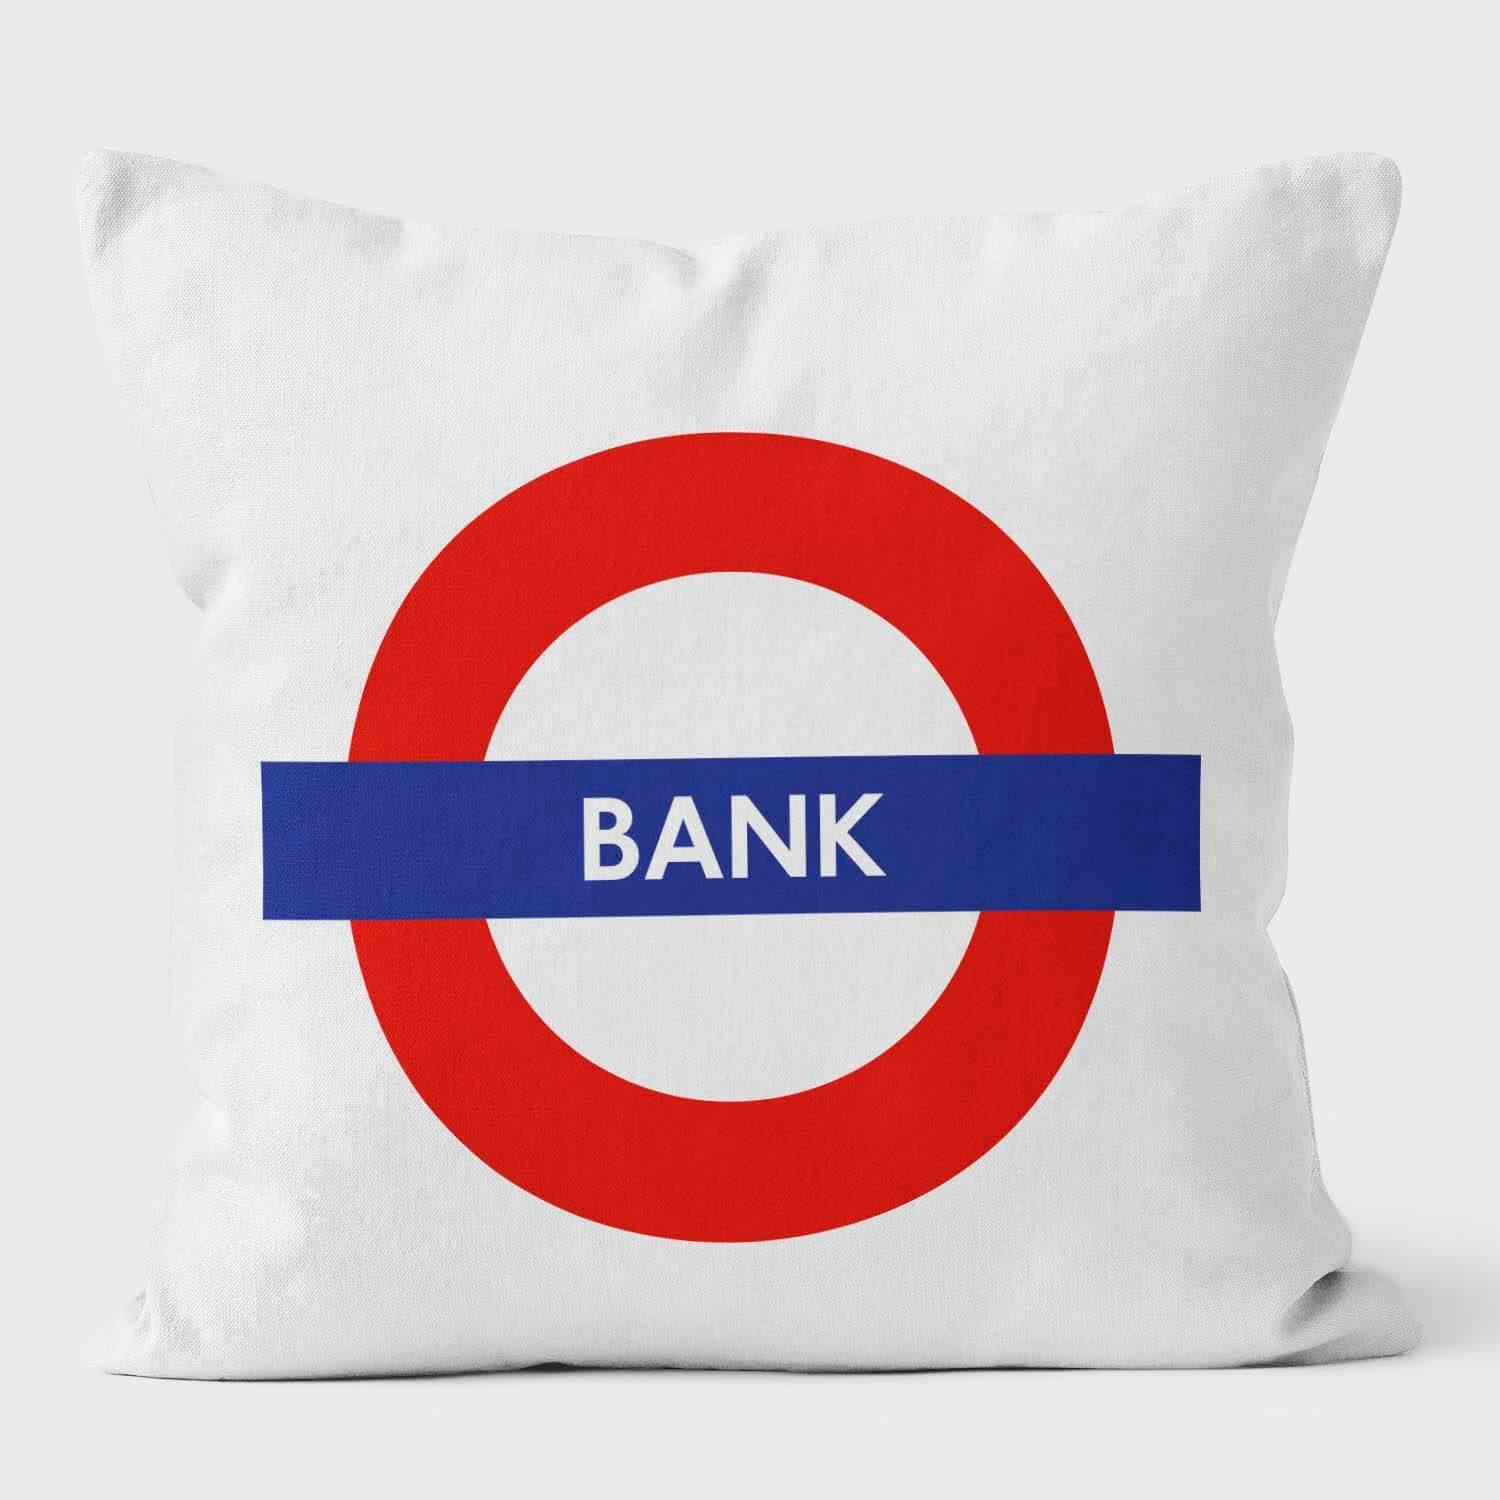 Bank London Underground Tube Station Roundel Cushion - Handmade Cushions UK - WeLoveCushions